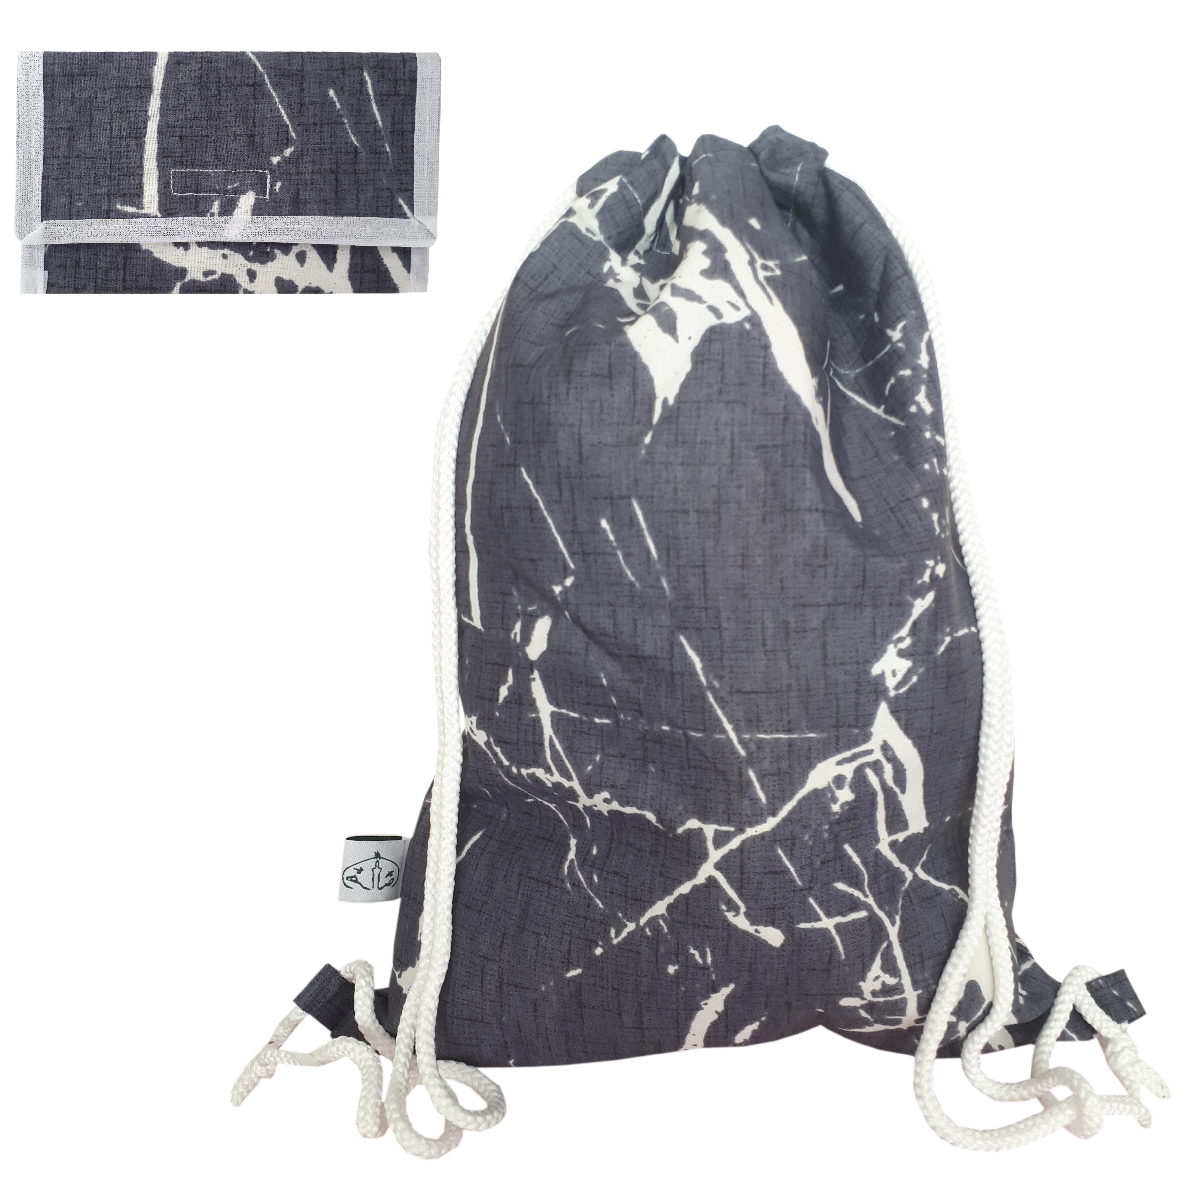 کوله پشتی ورزشی  مدل مرمر کد 307 به همراه کیف جیبی دستمال کاغذی